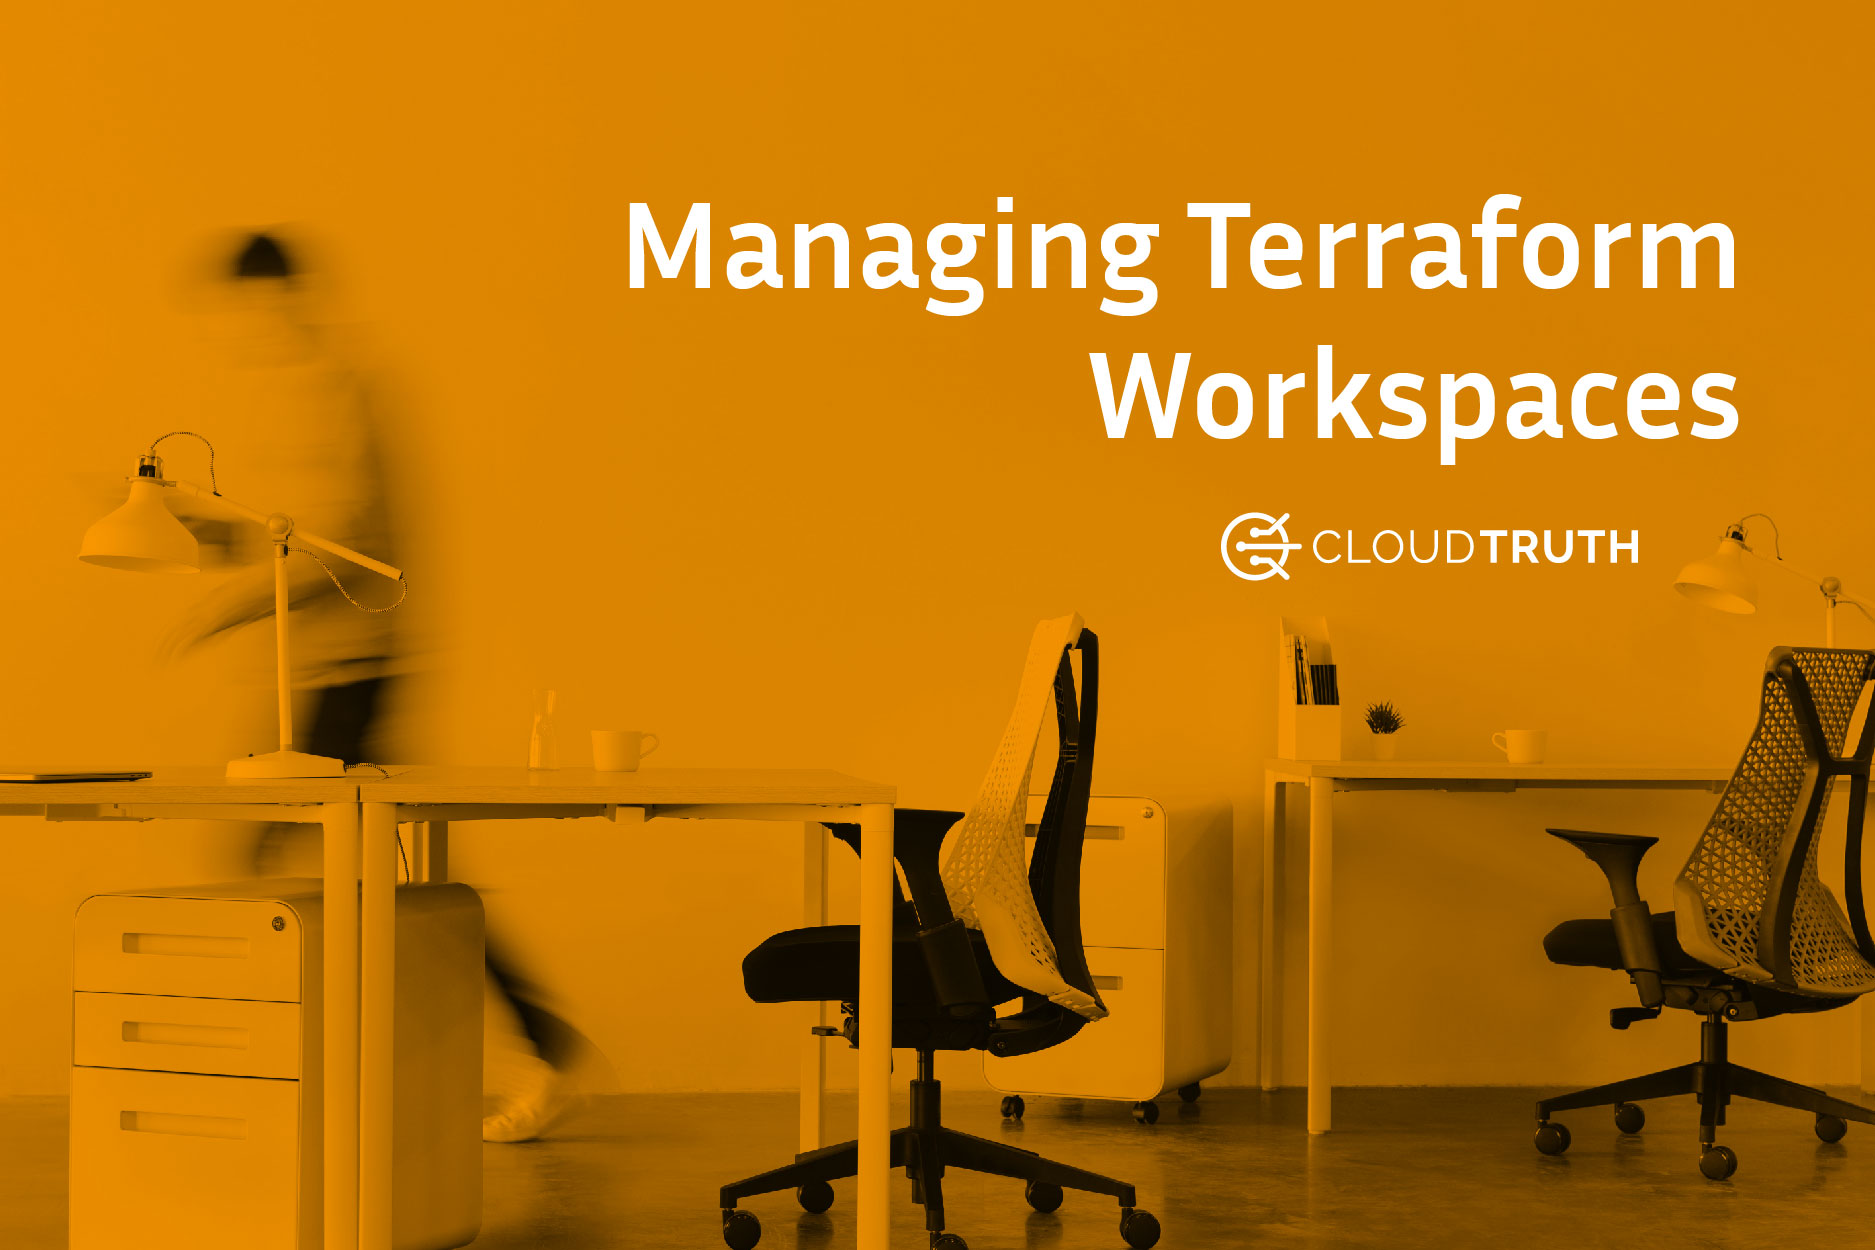 Managing Terraform Workspaces